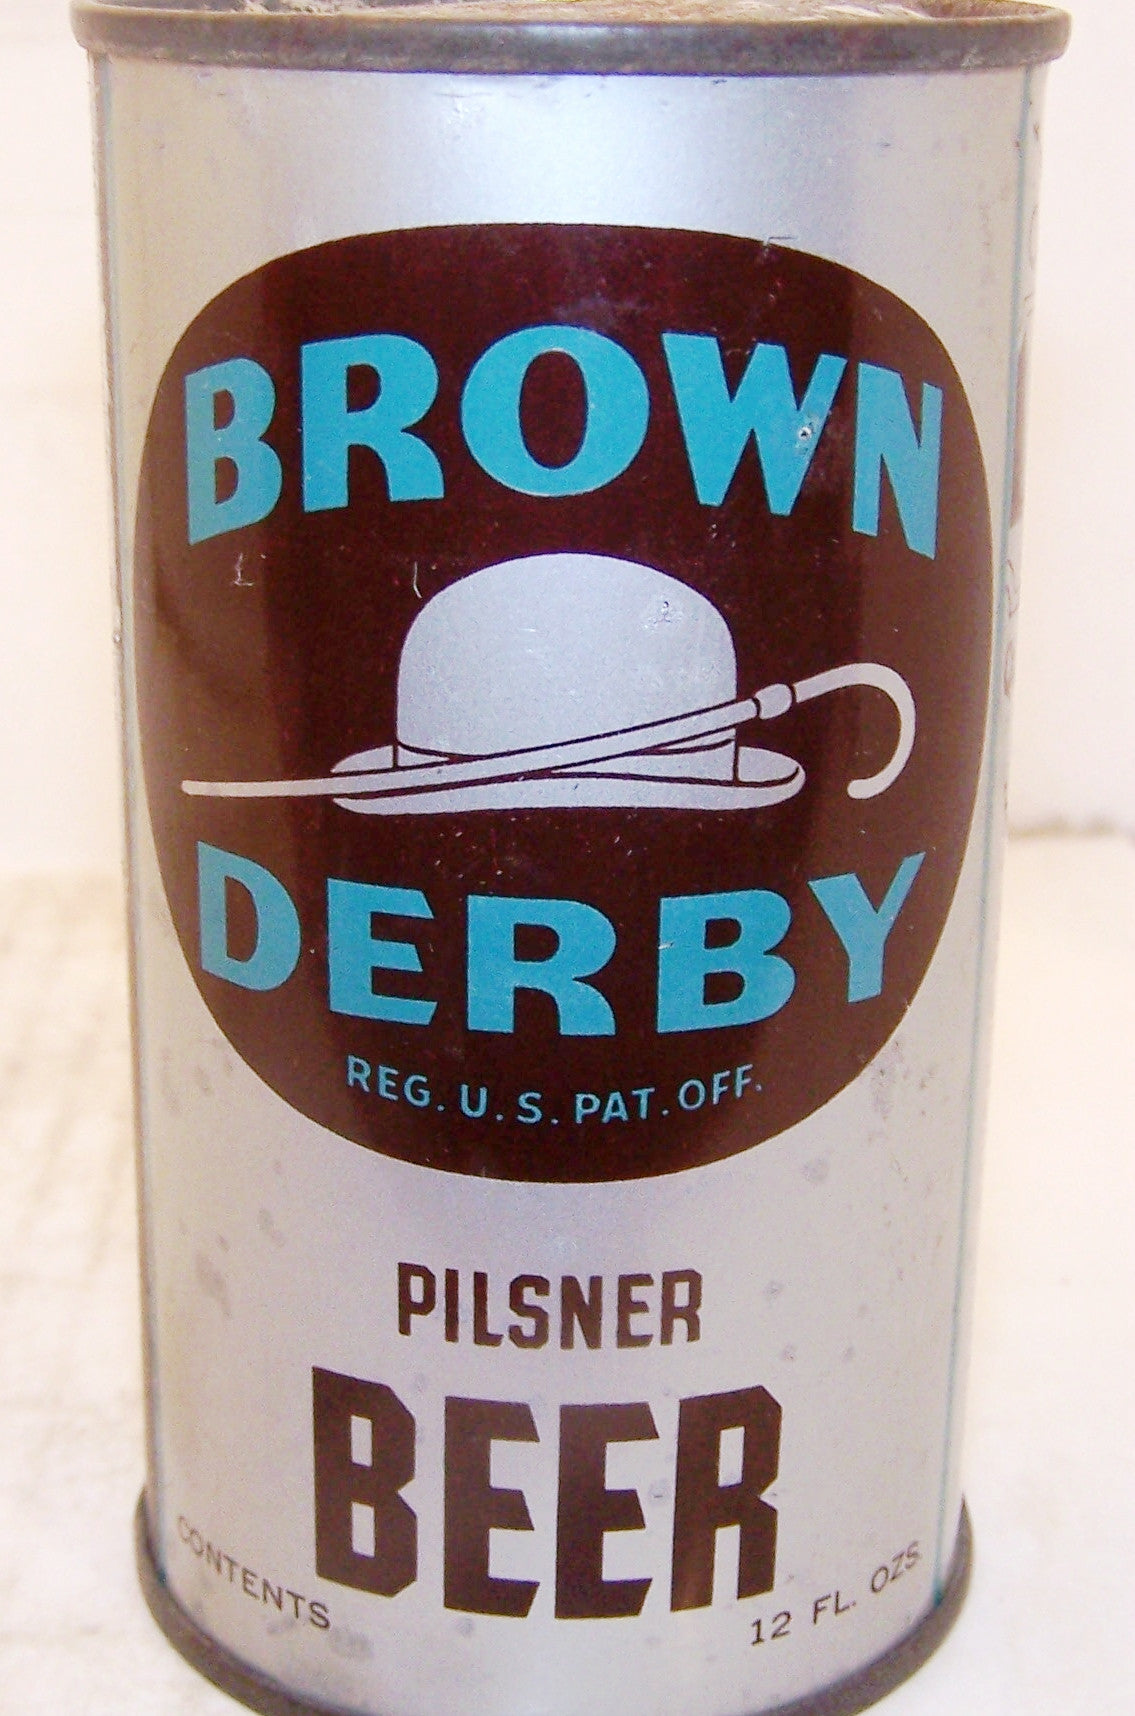 Brown Derby Pilsner Beer, Lilek page # 132, Grade 1/1- Sold 12/27/14